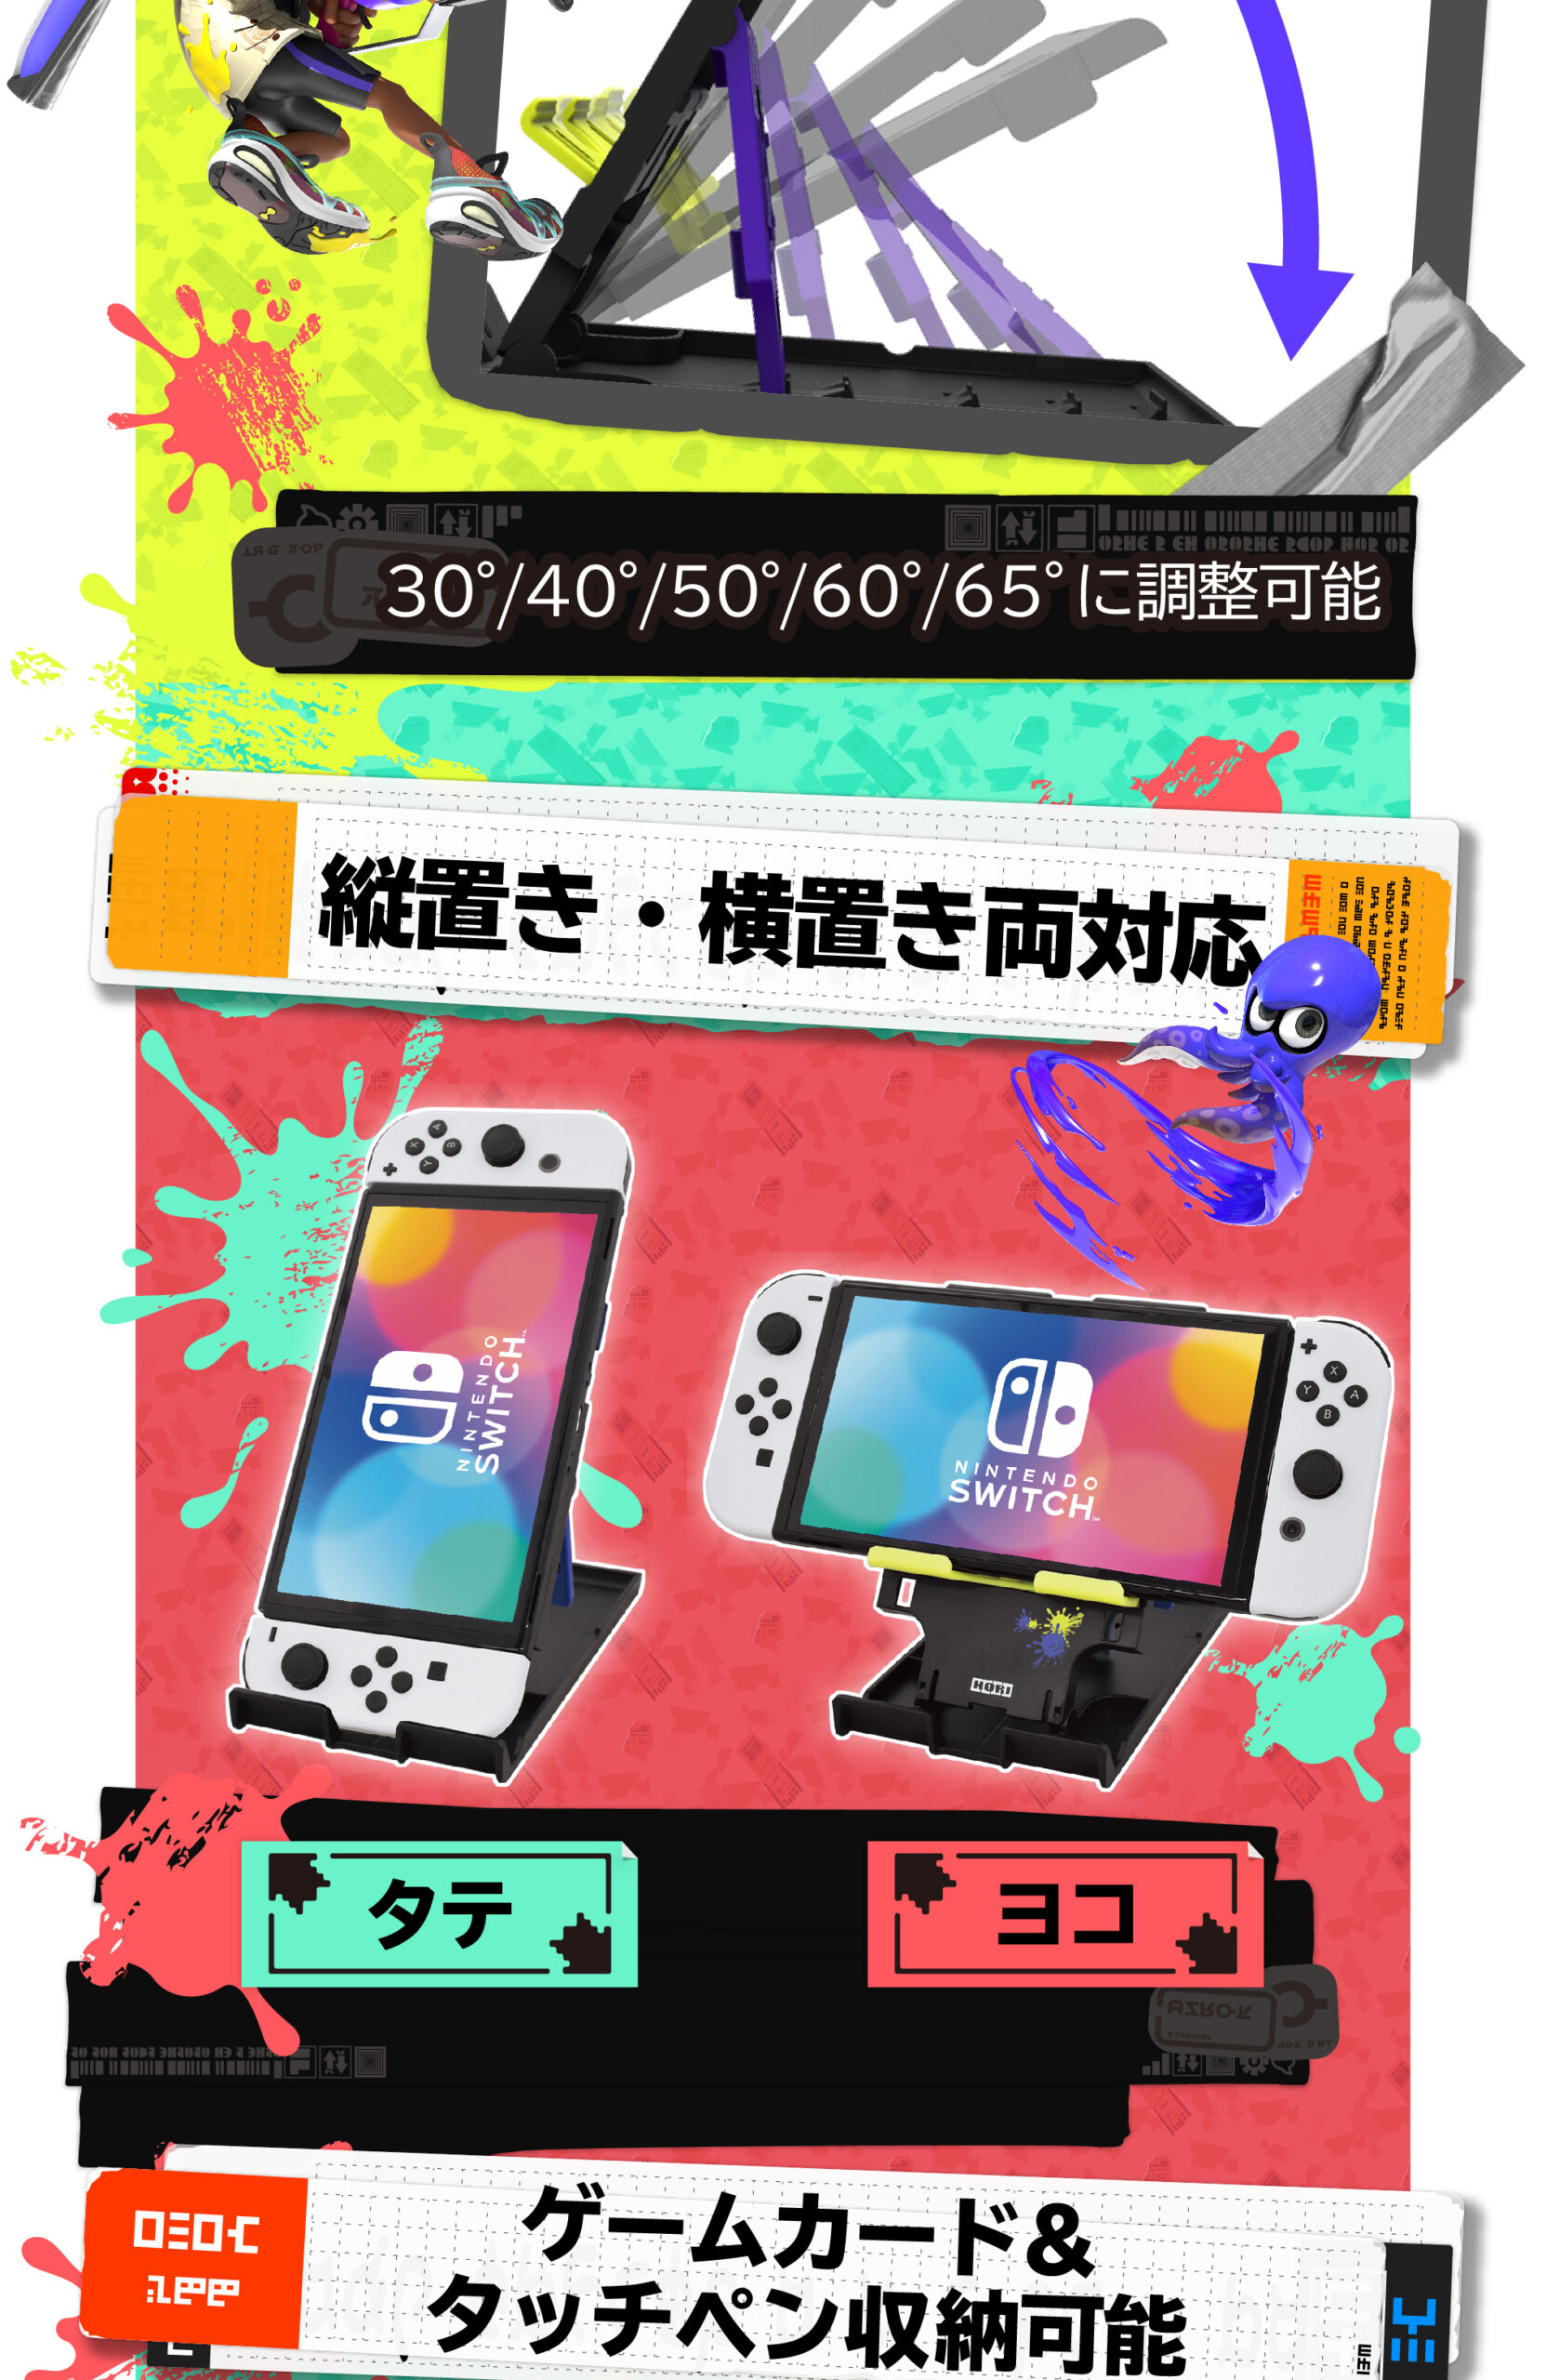 株式会社 HORI | スプラトゥーン3 多機能プレイスタンド for Nintendo Switch